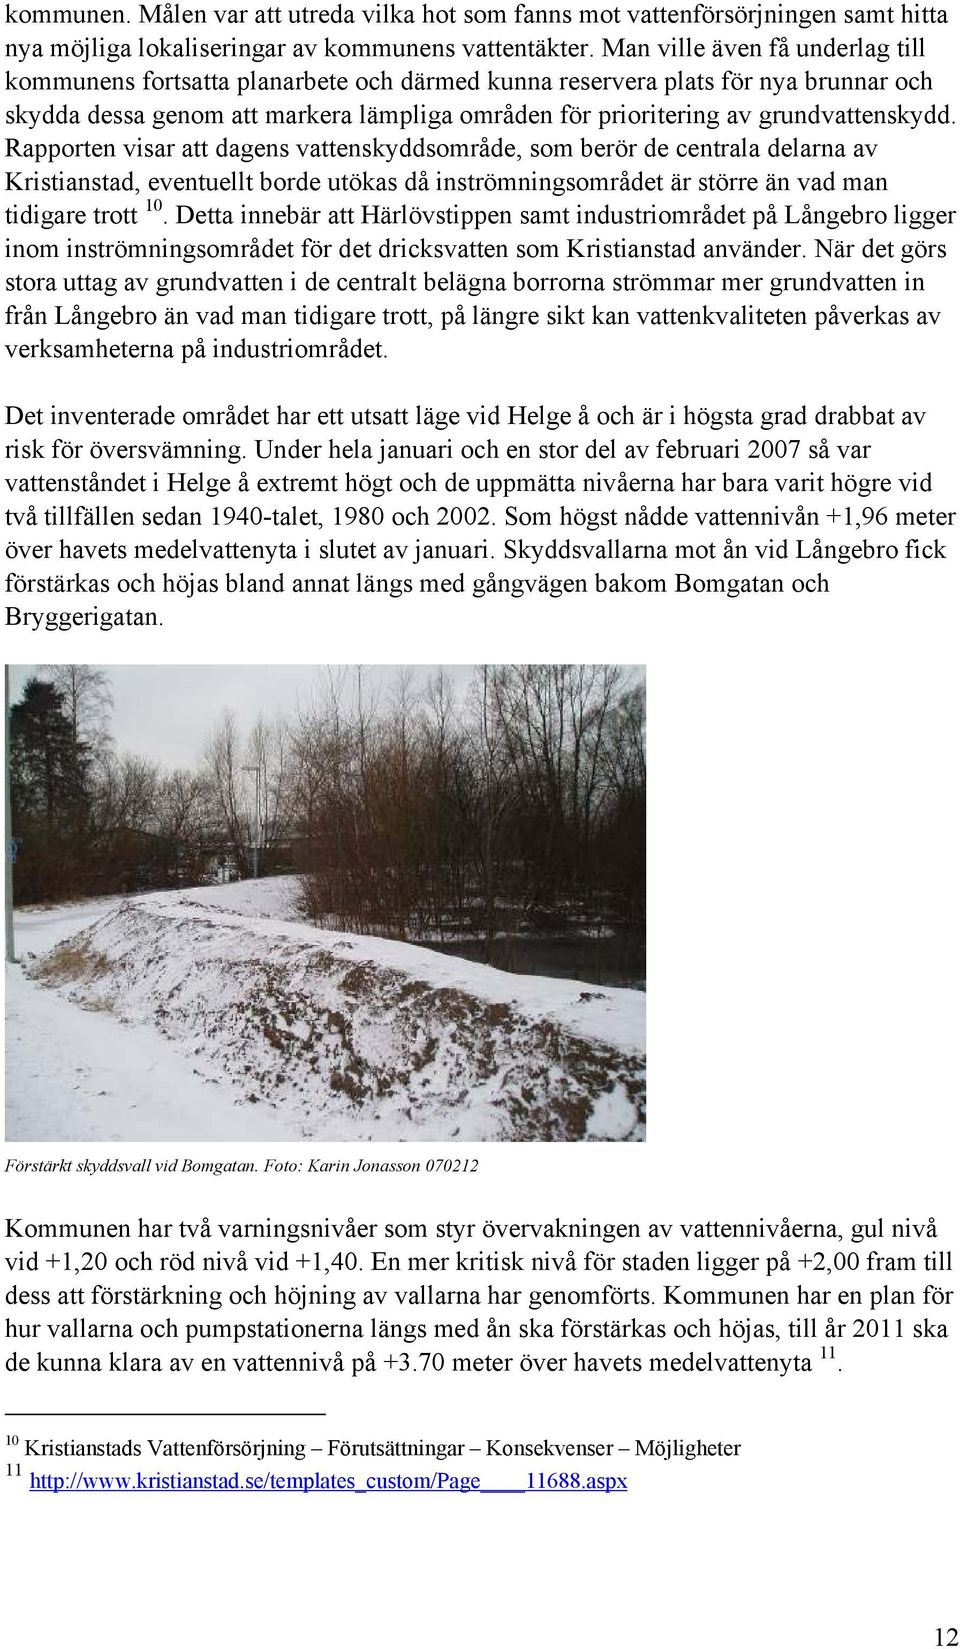 grundvattenskydd. Rapporten visar att dagens vattenskyddsområde, som berör de centrala delarna av Kristianstad, eventuellt borde utökas då inströmningsområdet är större än vad man tidigare trott 10.